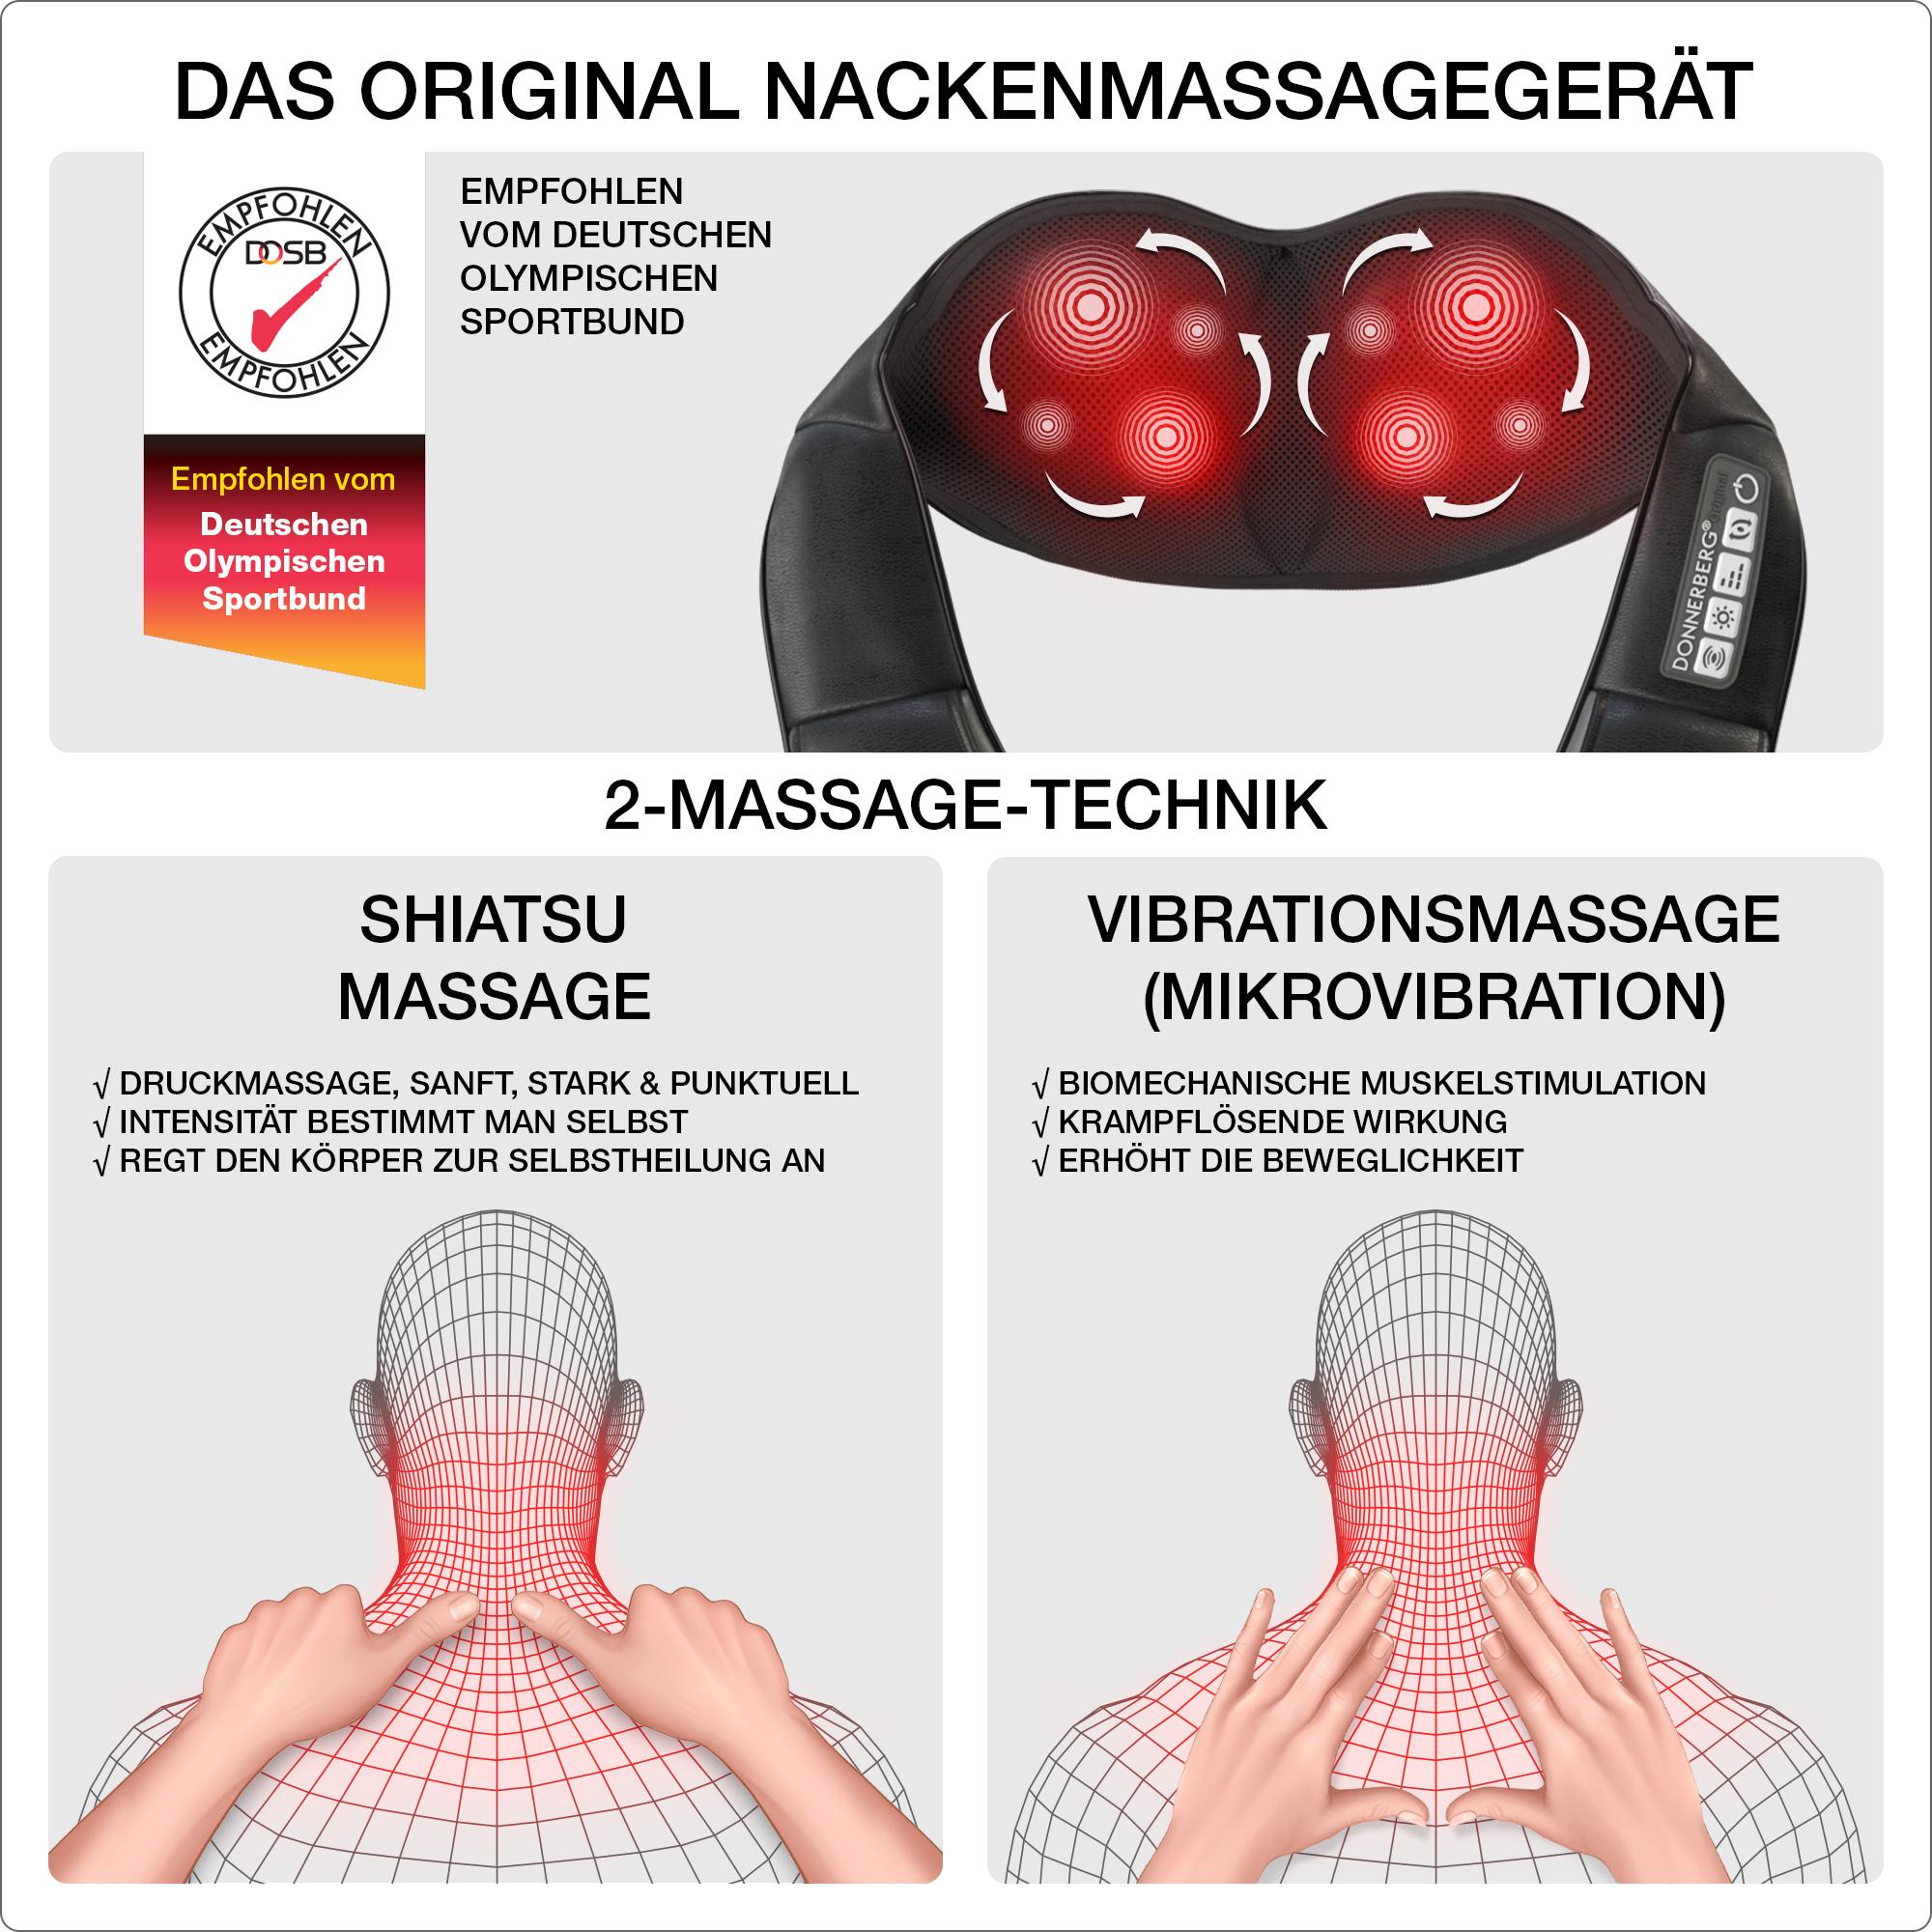 DONNERBERG Massagegerät 4D Shiatsu DAS Nackenmassagegerät ORIGINAL Massage